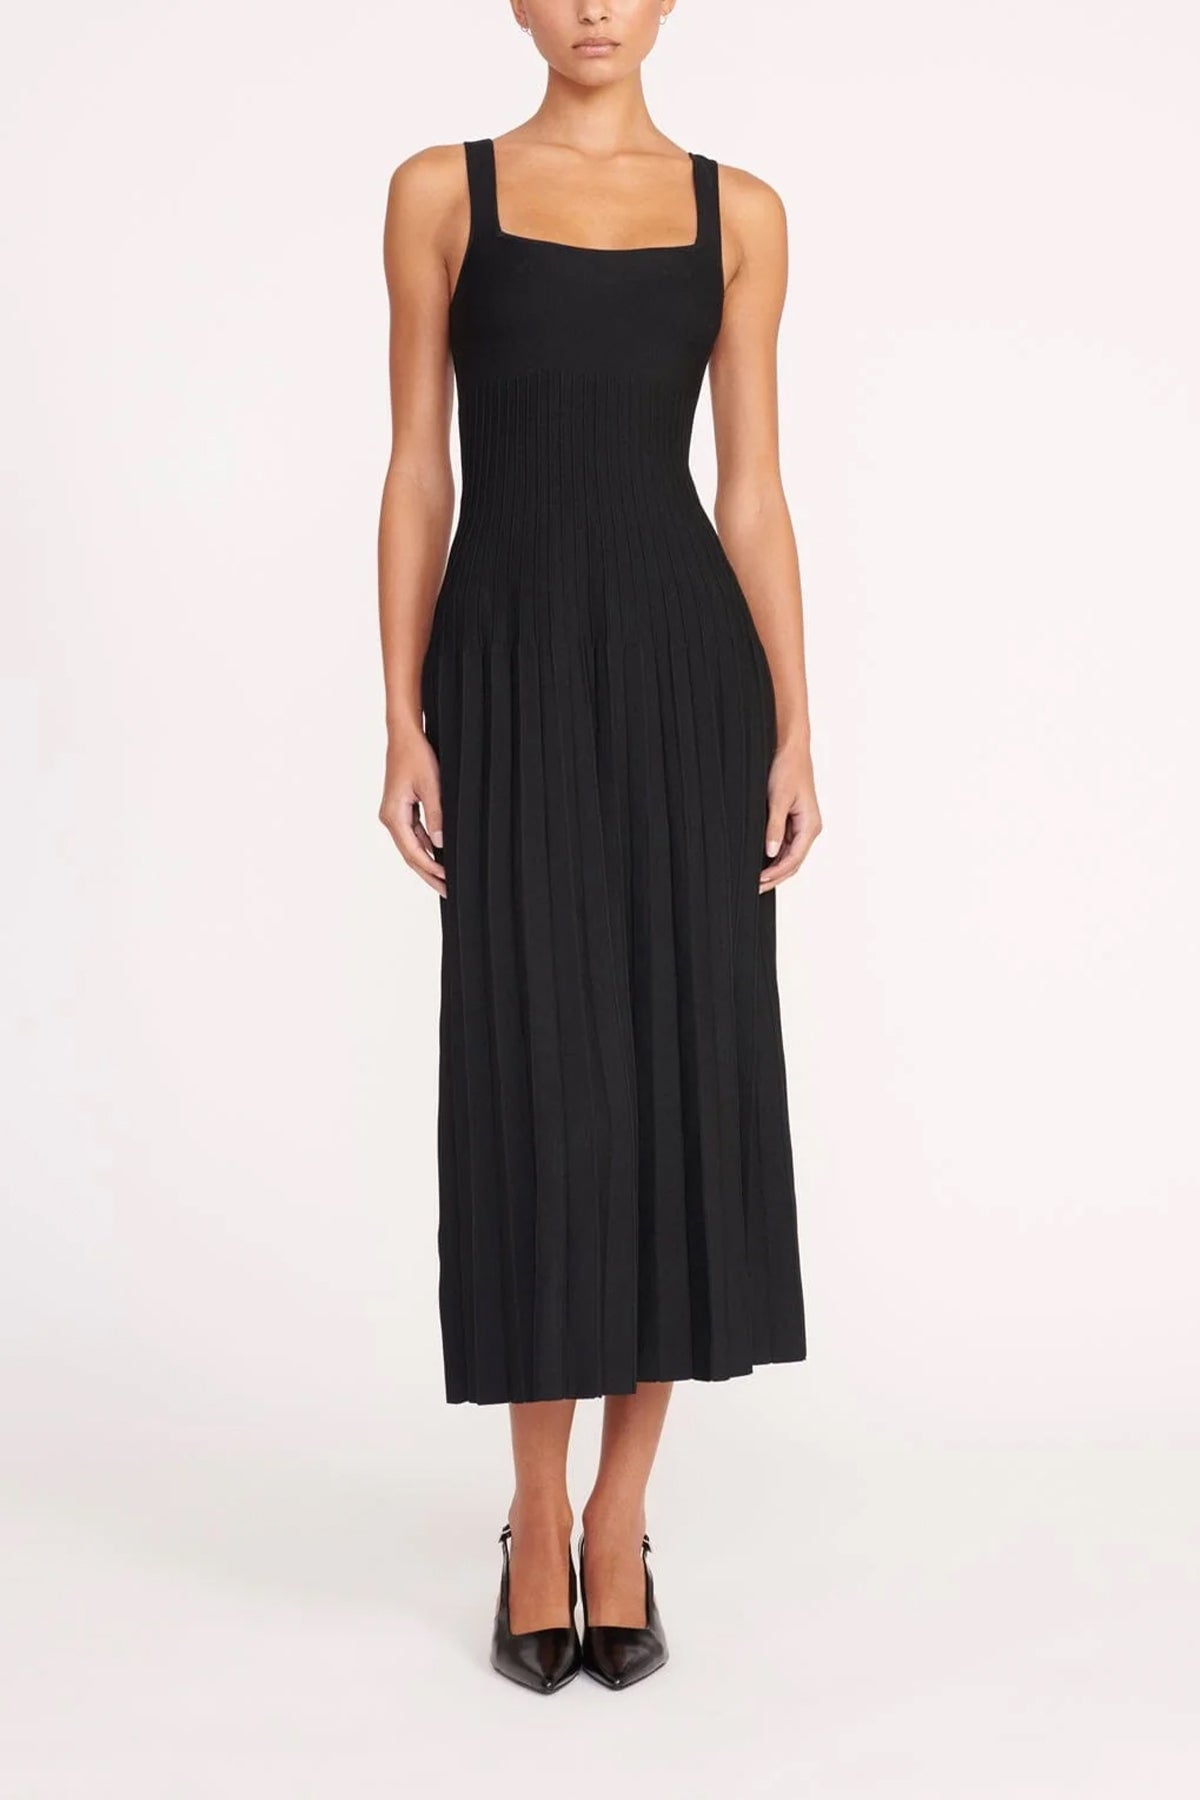 Ellison Dress in Black - shop-olivia.com